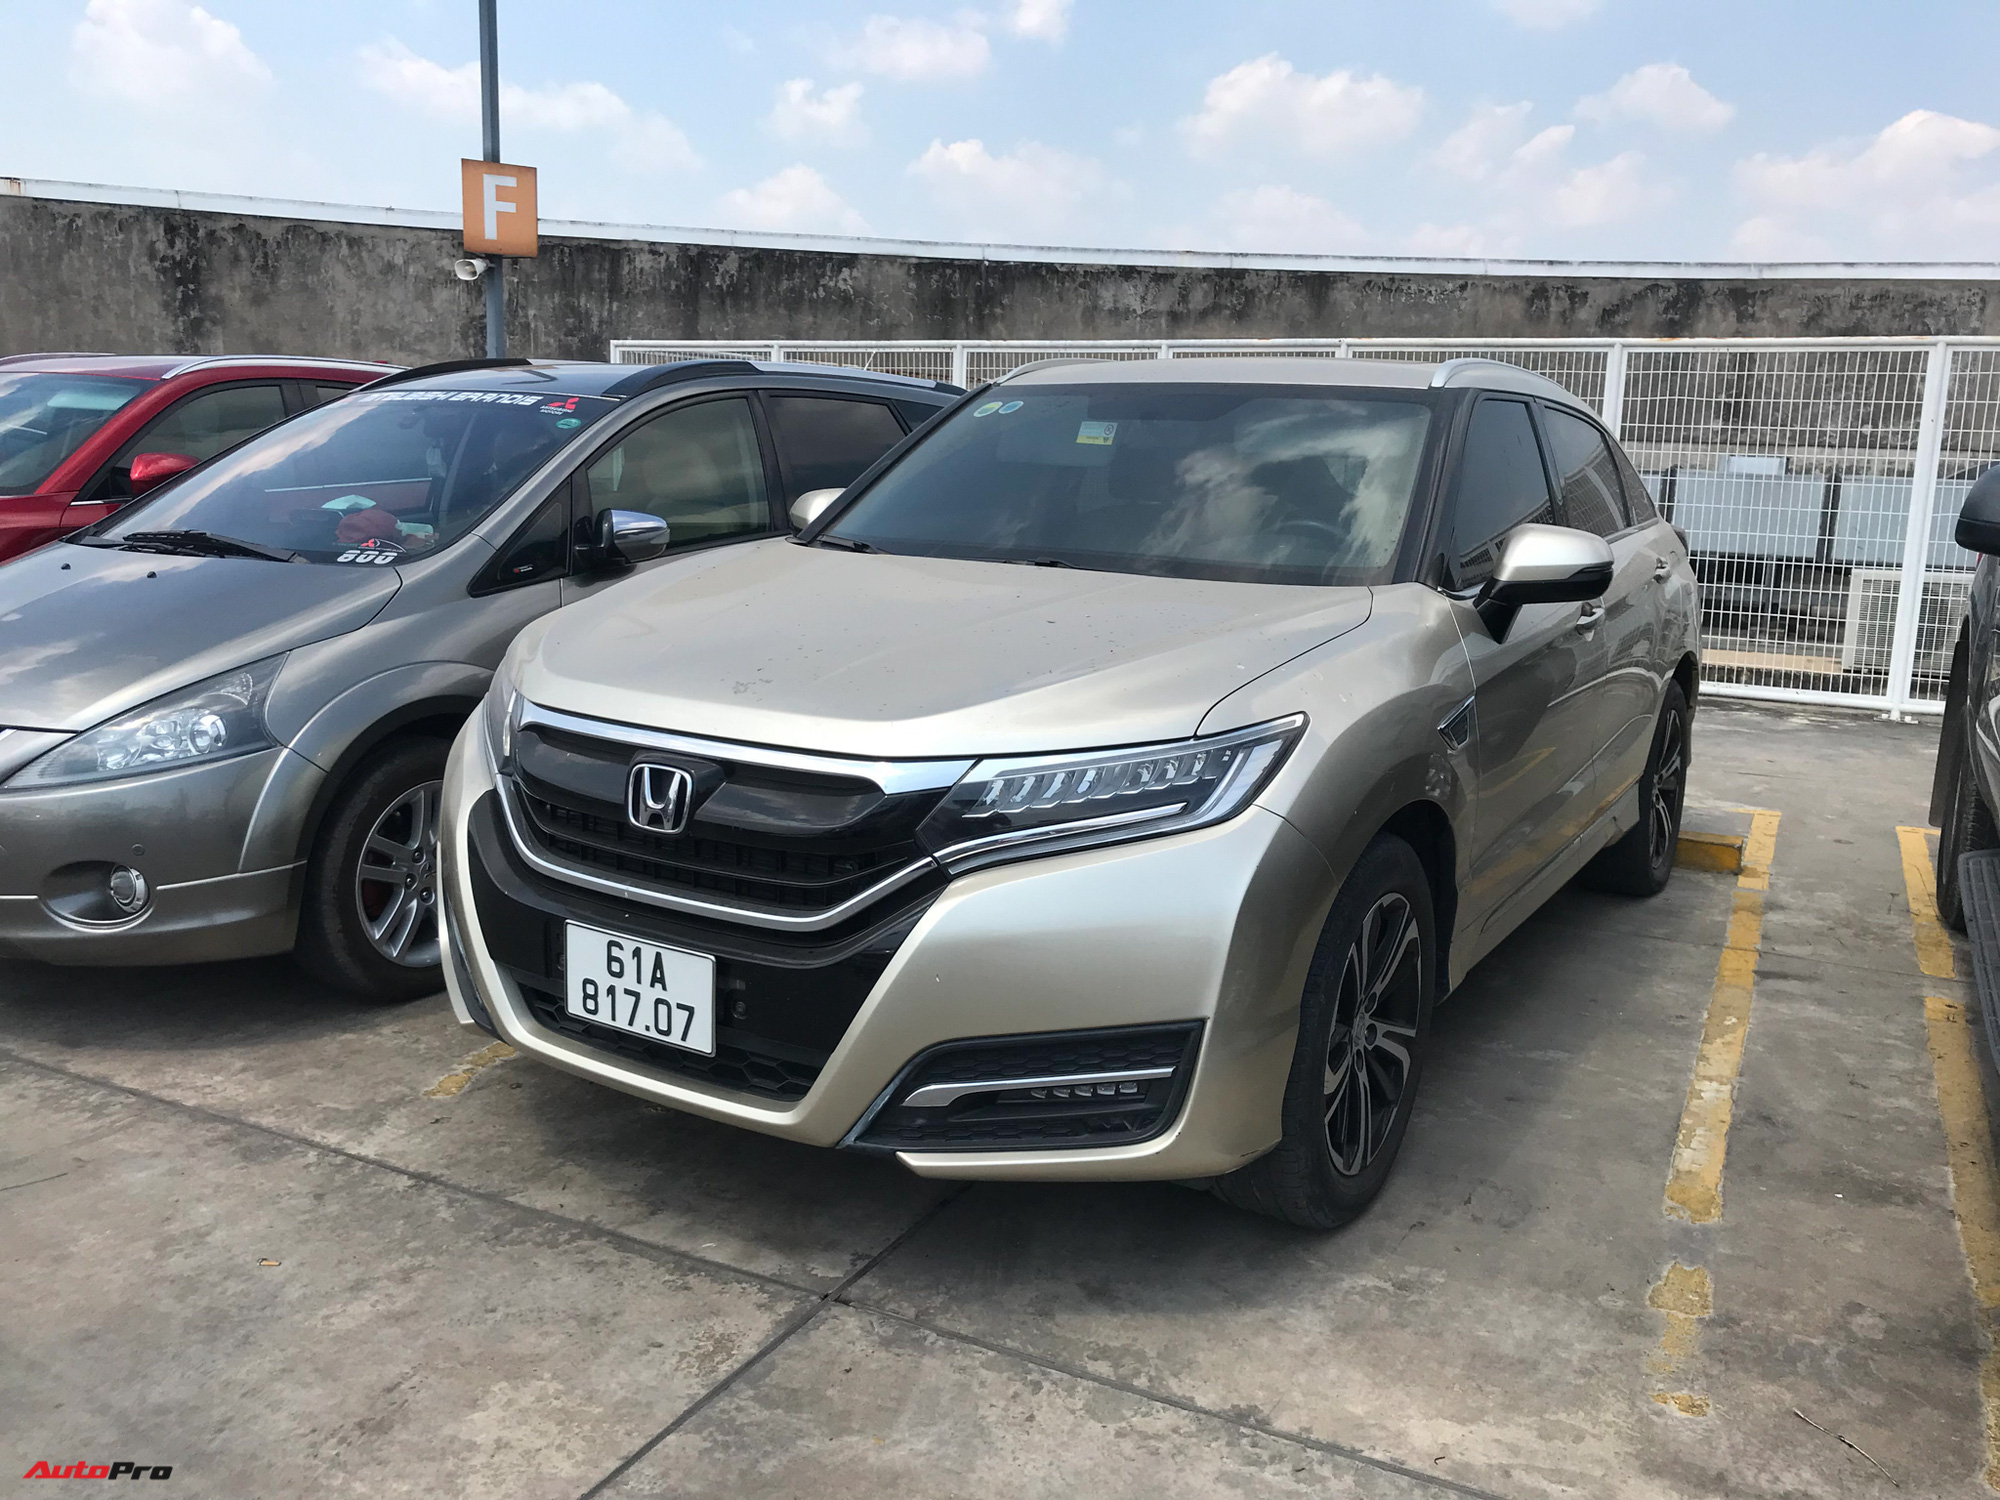 Honda UR-V hàng hiếm về Việt Nam: Crossover đàn anh của CR-V, kiểu dáng SUV lai coupe, nhập Trung Quốc - Ảnh 1.